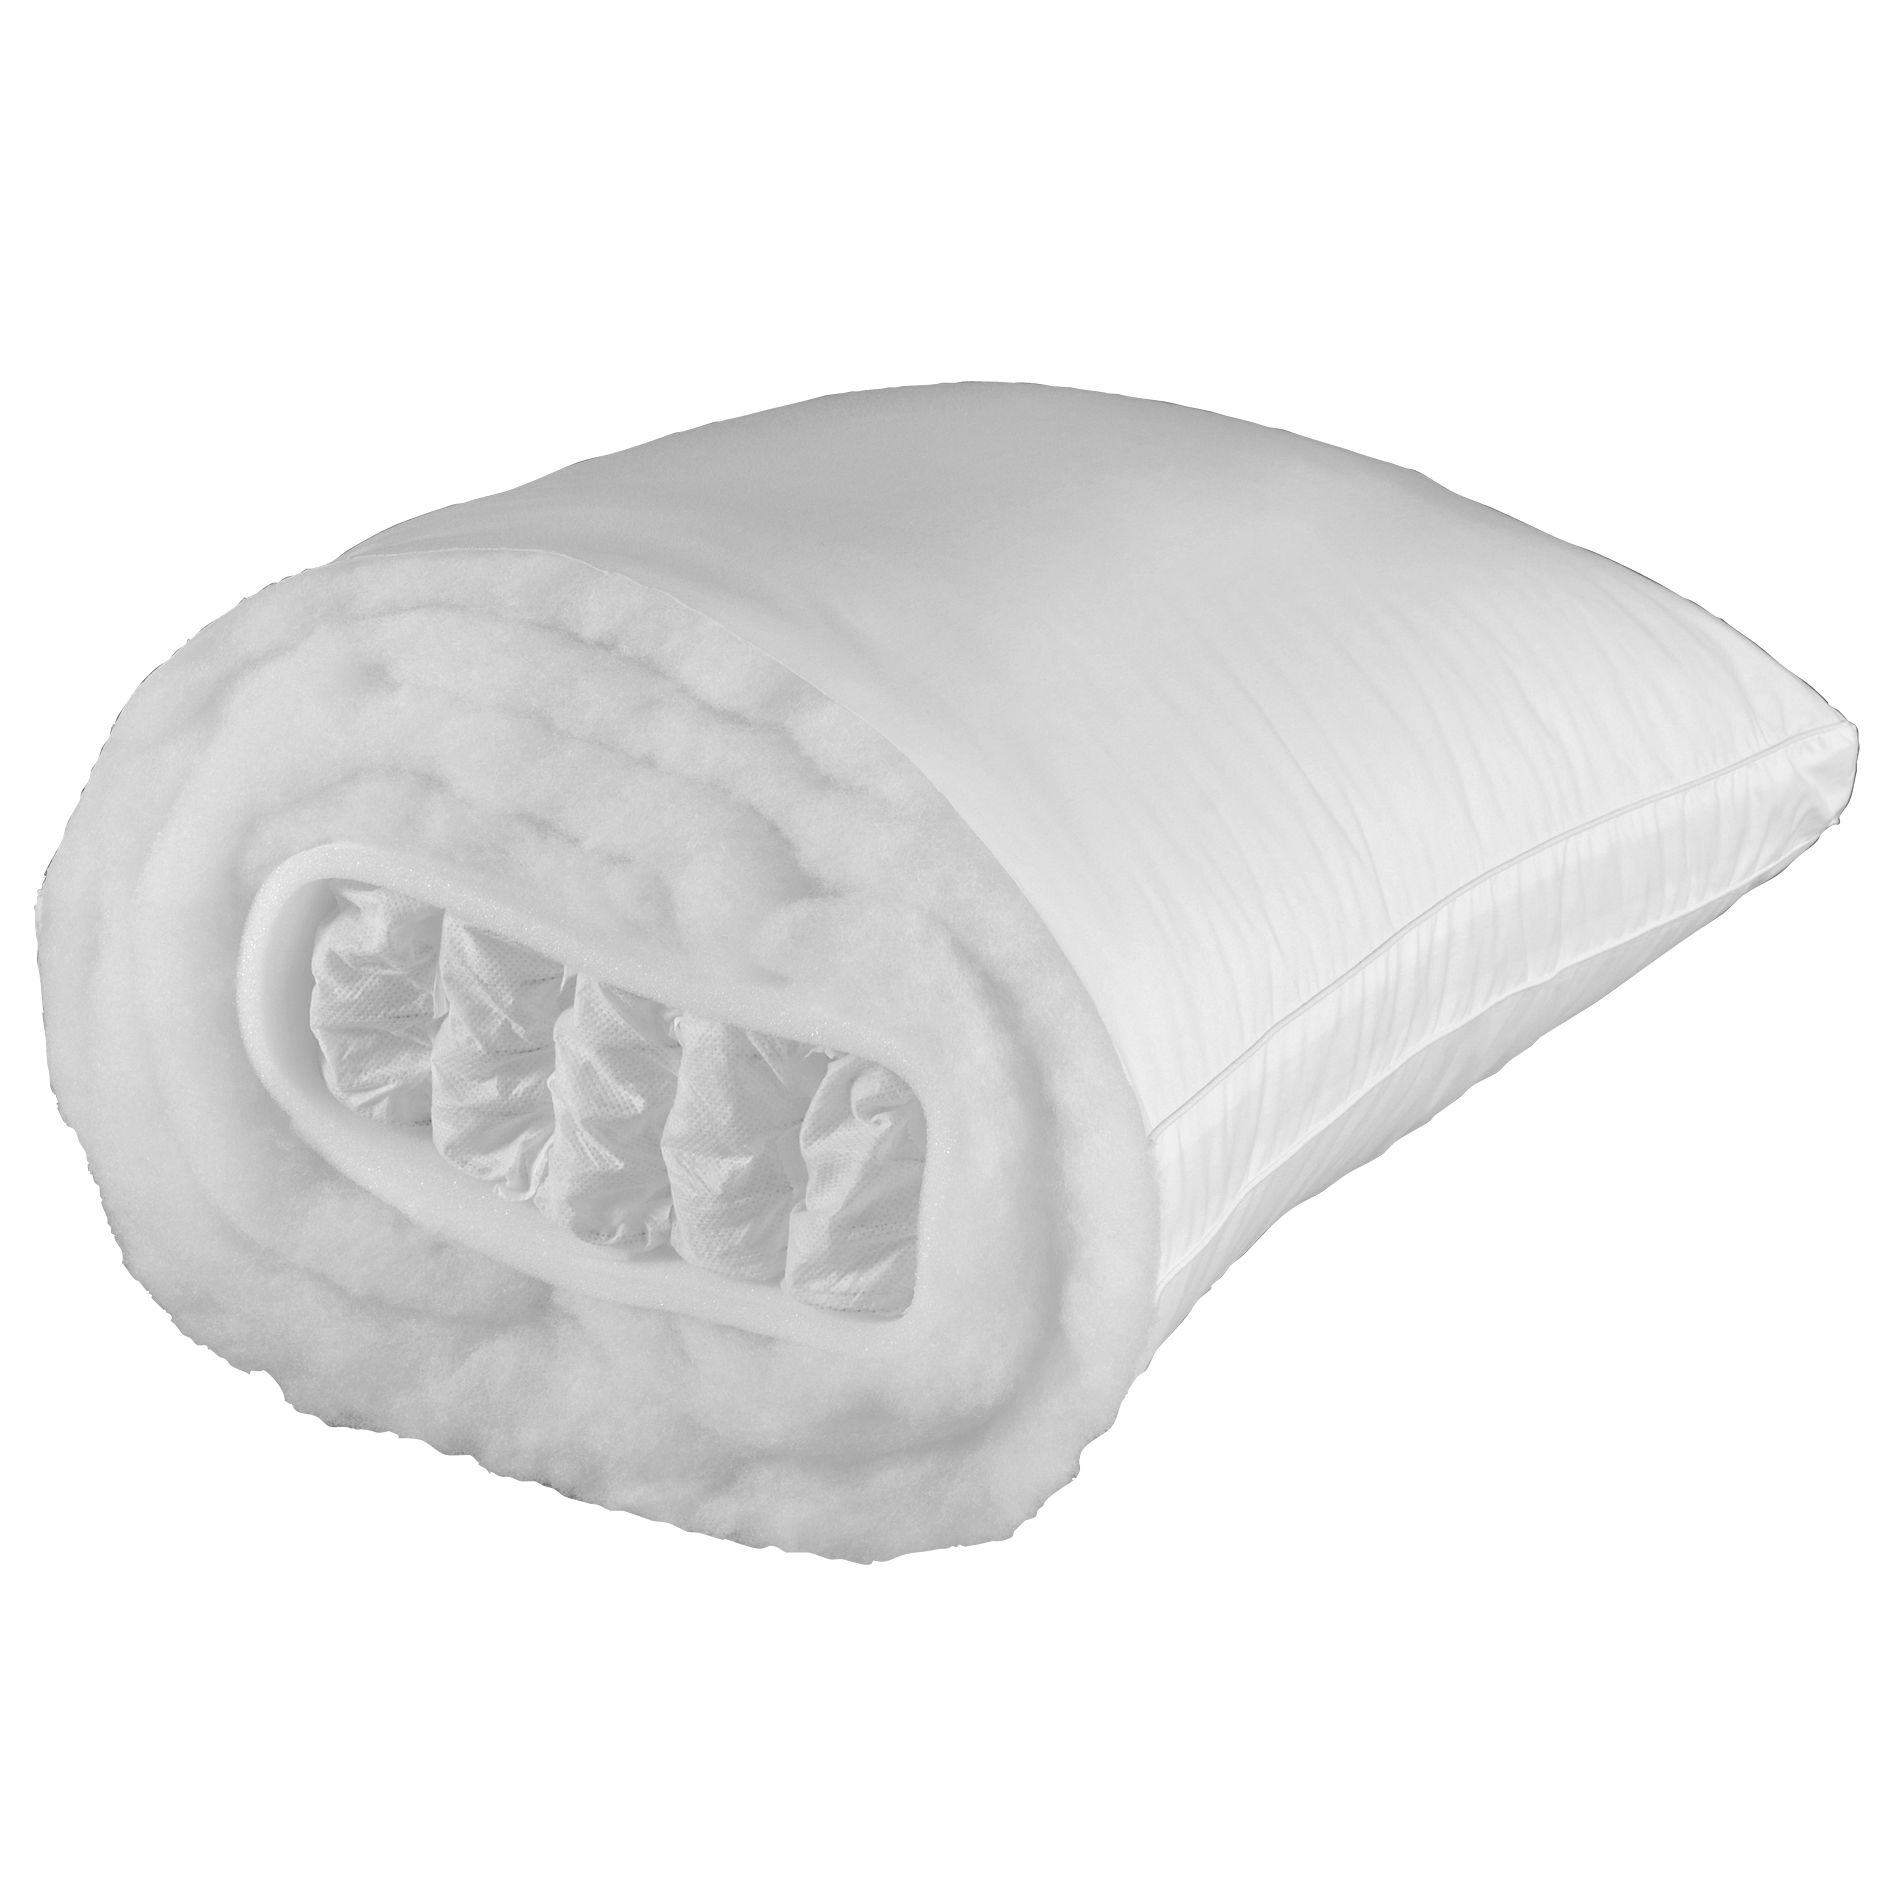 Ultra Firm Pillow